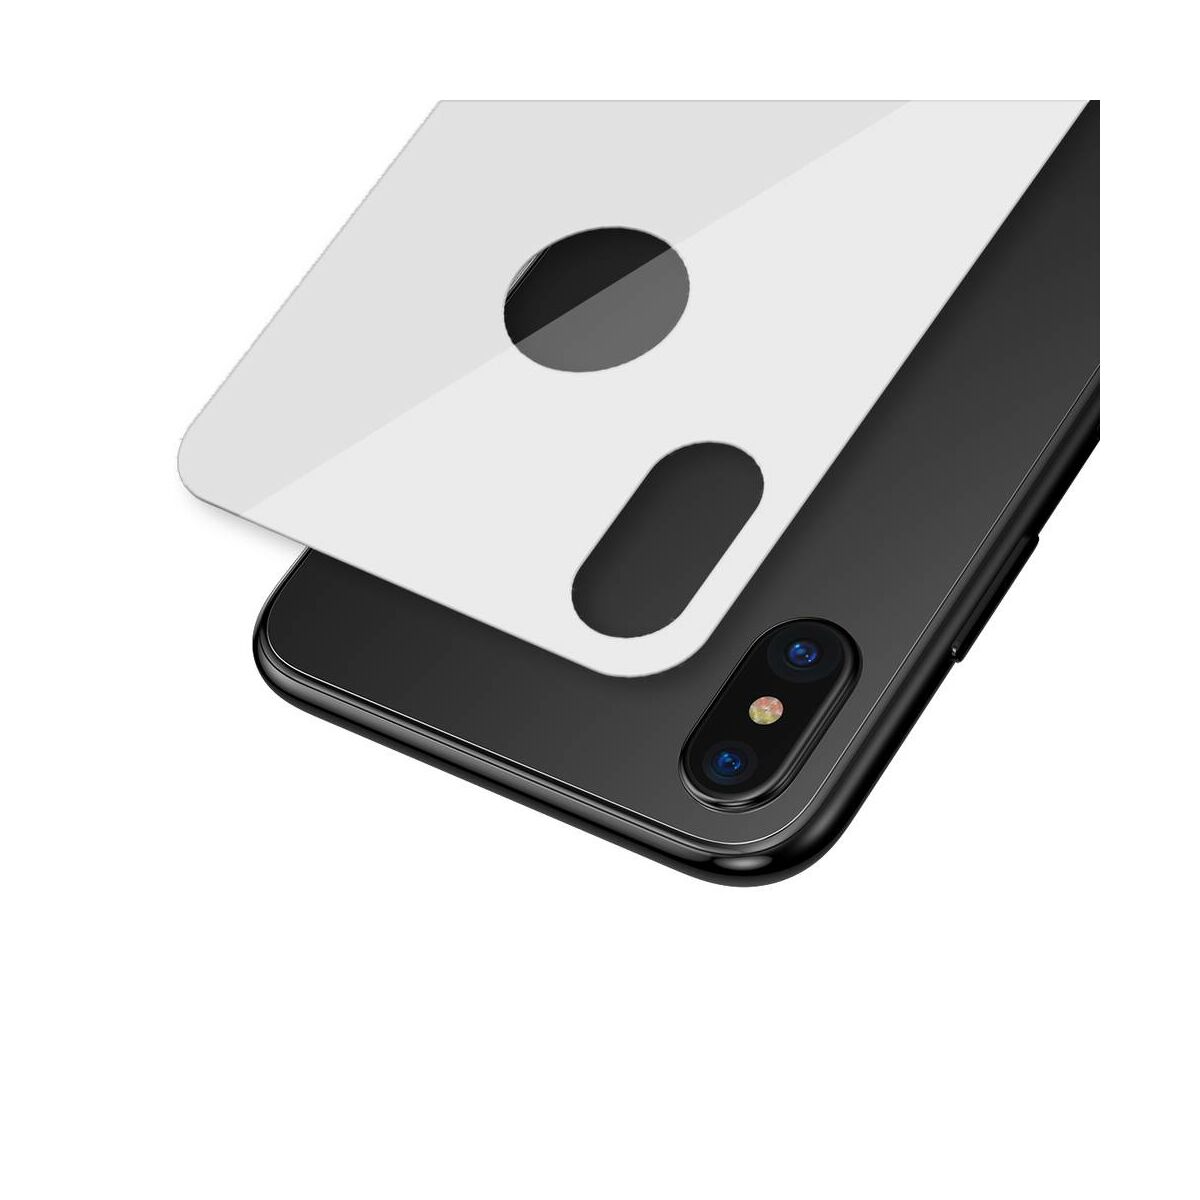 Kép 6/9 - Baseus iPhone XS (5.8") 0.3 mm, teljes lefedésre edzett üveg hátlap védő fólia, fehér (SGAPIPH58-BM02)